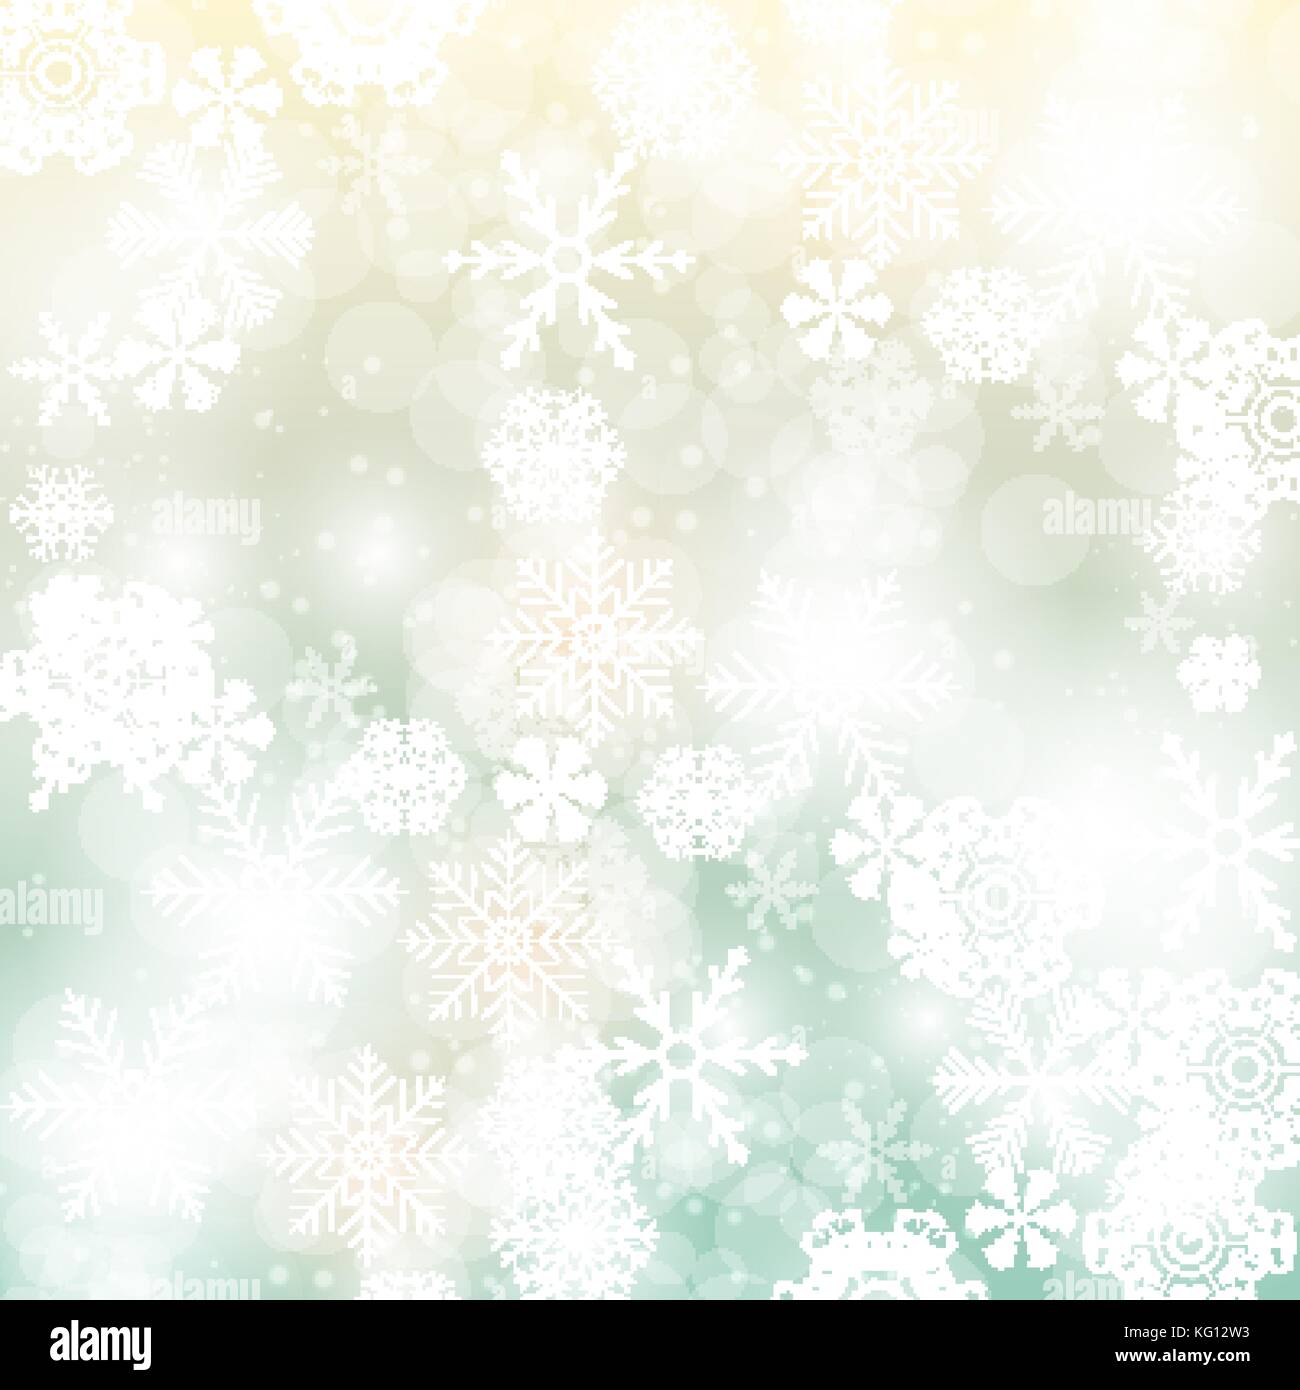 Abstrakte Weihnachten und Neujahr Hintergrund mit Schneeflocken. Vector Illustration Stock Vektor